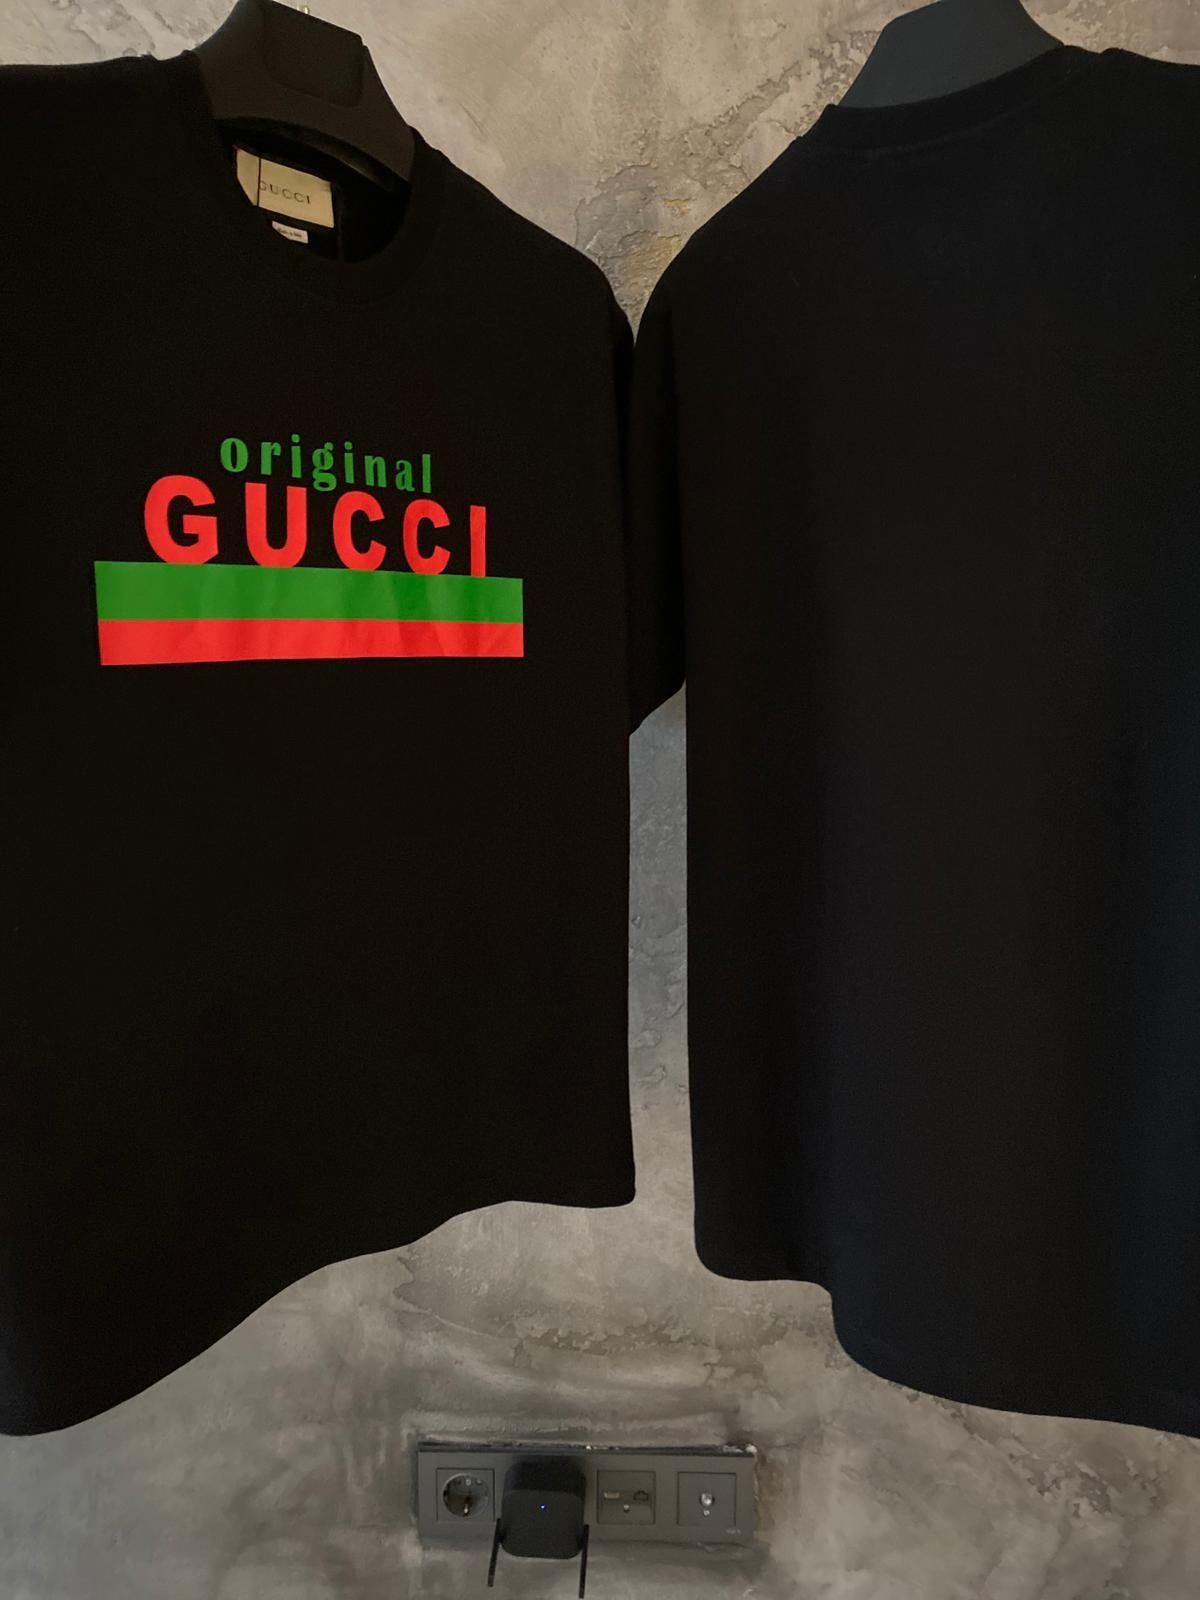 Gucci "Original" t shirt